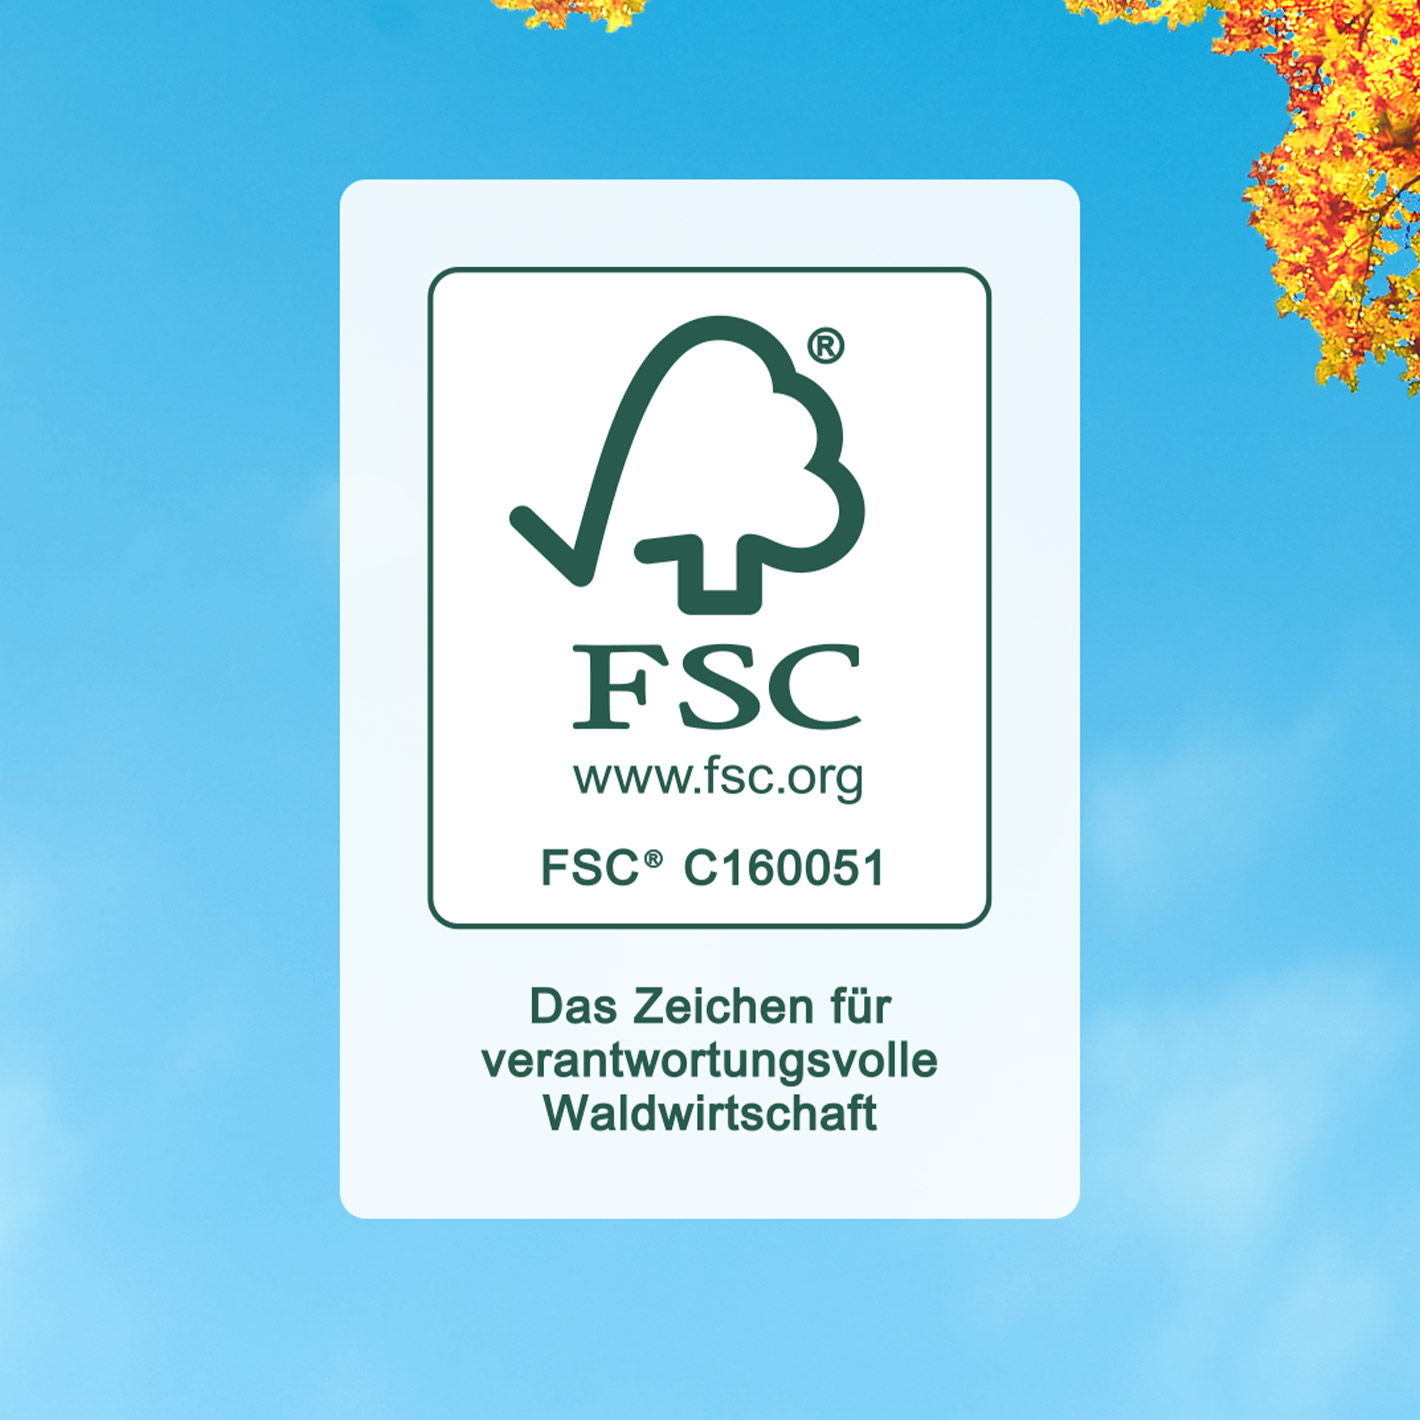 FSC Logo vor Hintergrund mit Himmel